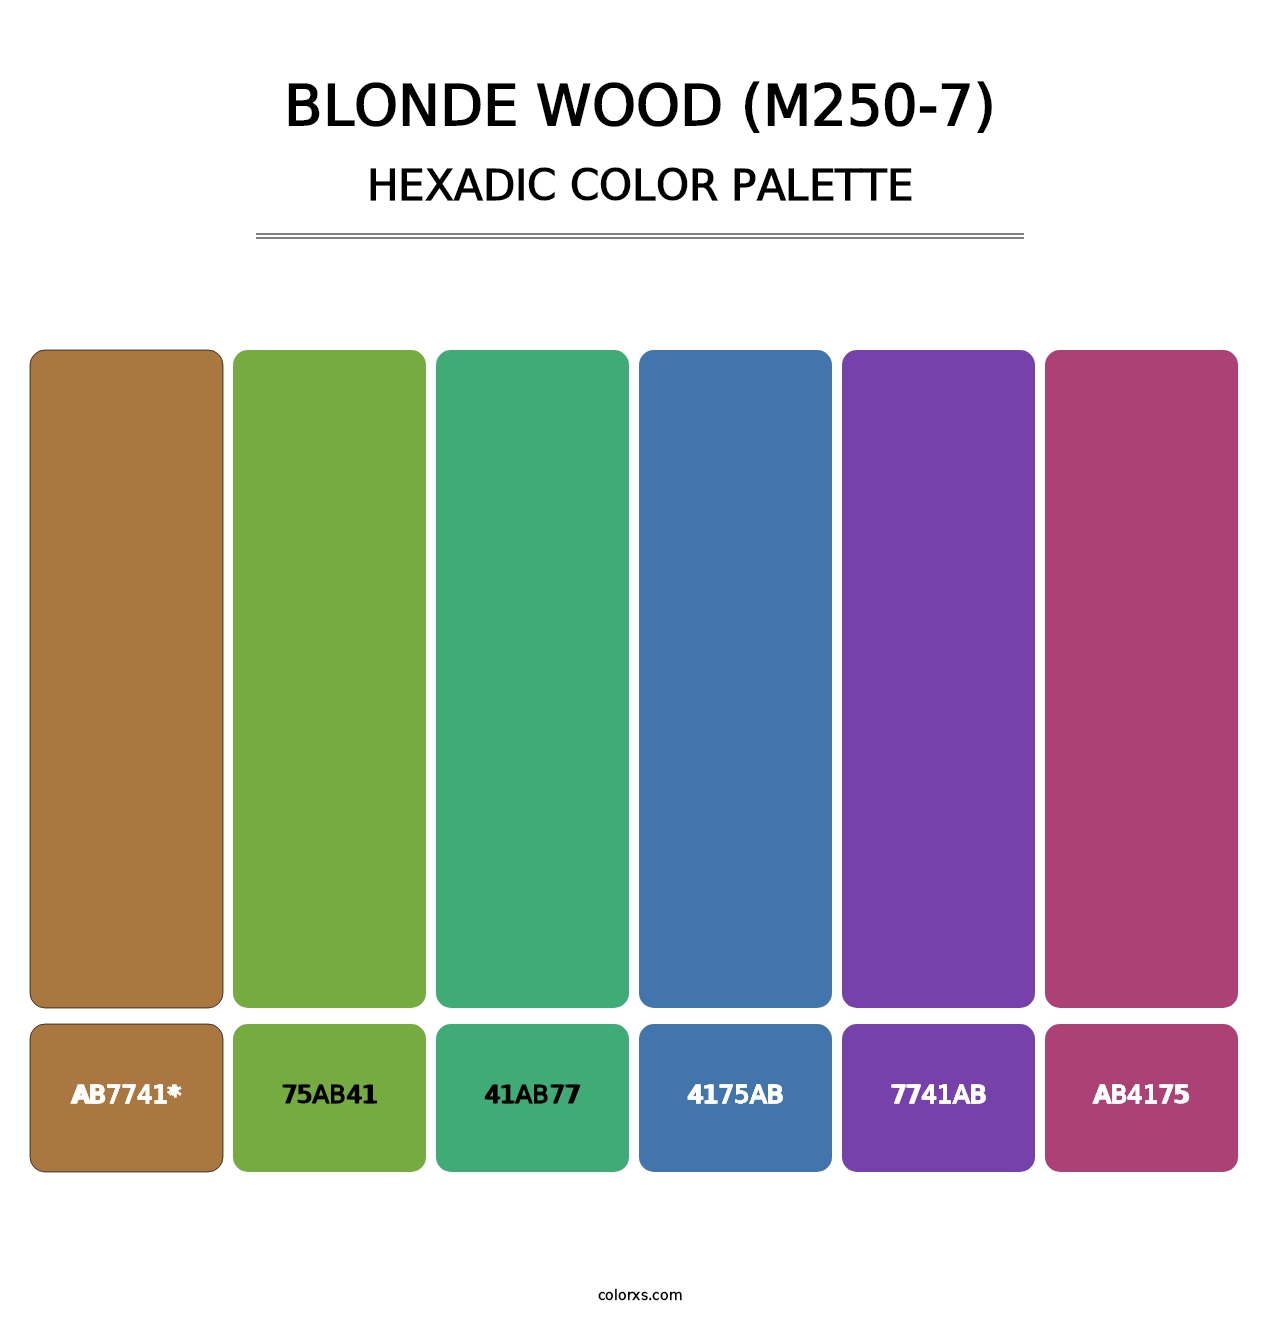 Blonde Wood (M250-7) - Hexadic Color Palette